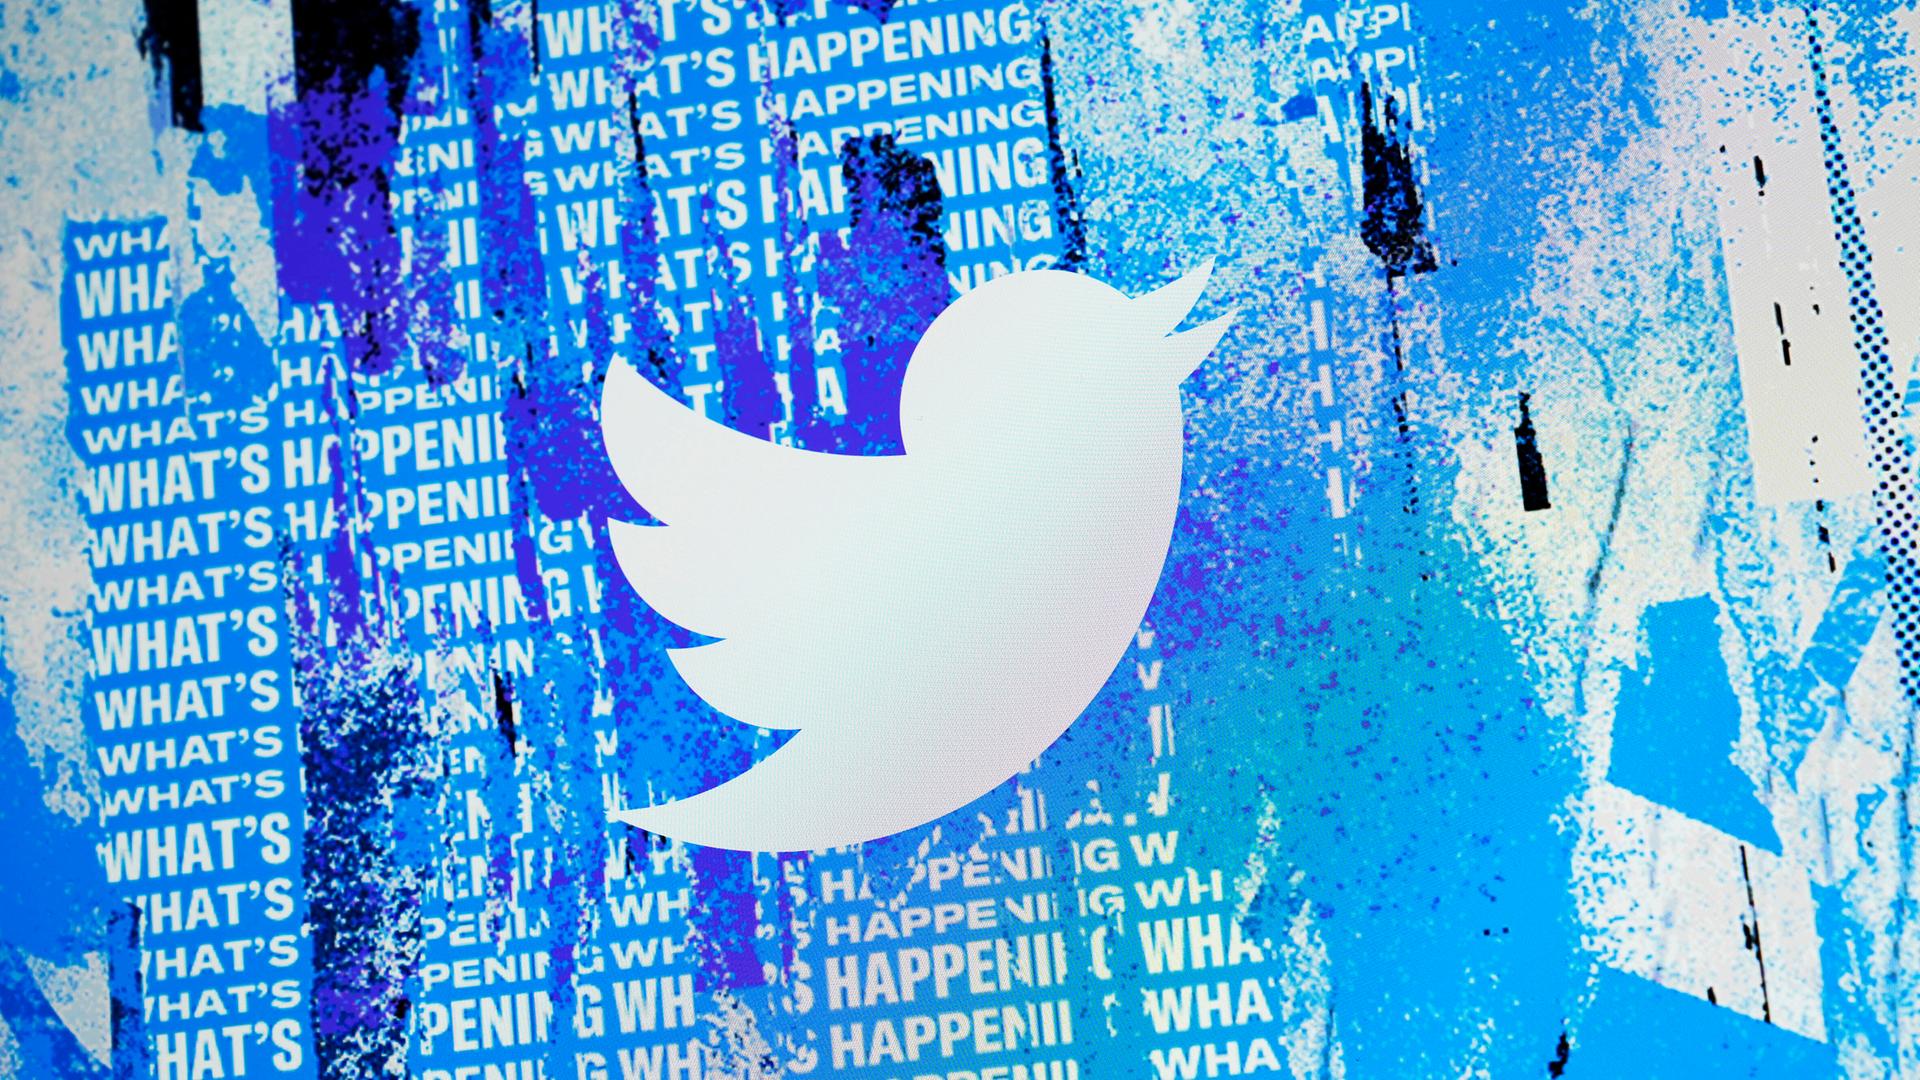 Collage eines Twitter-Spatzen auf einem Computerbildshirm, im Hintergrund ist der Schriftzug "What's happening" mehrfach untereinander zu sehen.